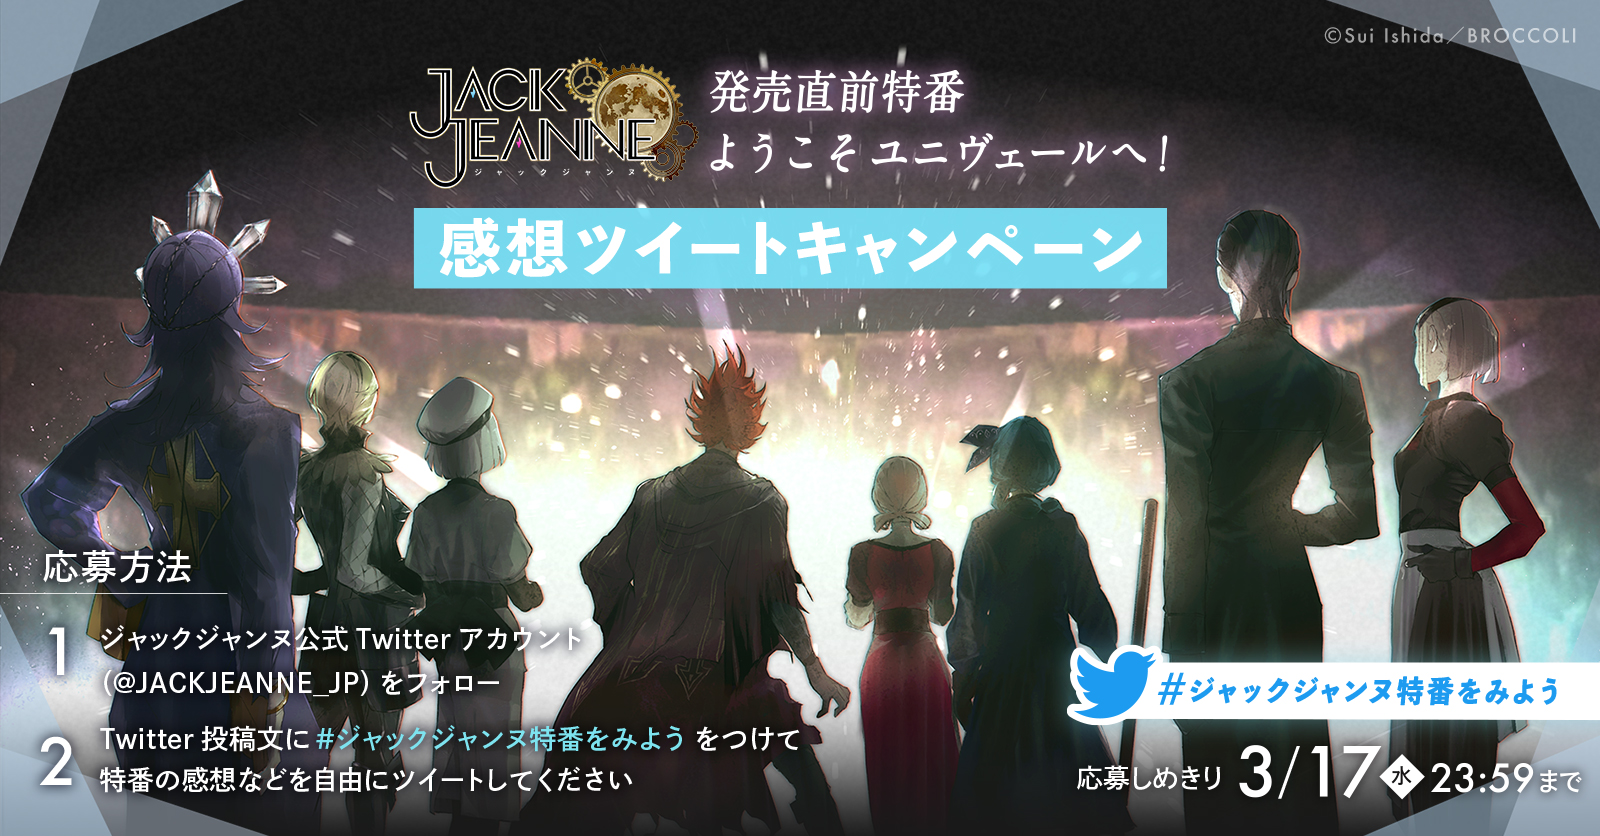 Nintendo Switch 用ソフト「ジャックジャンヌ」発売直前記念 スペシャル特番「ようこそユニヴェールへ」Twitterキャンペーン